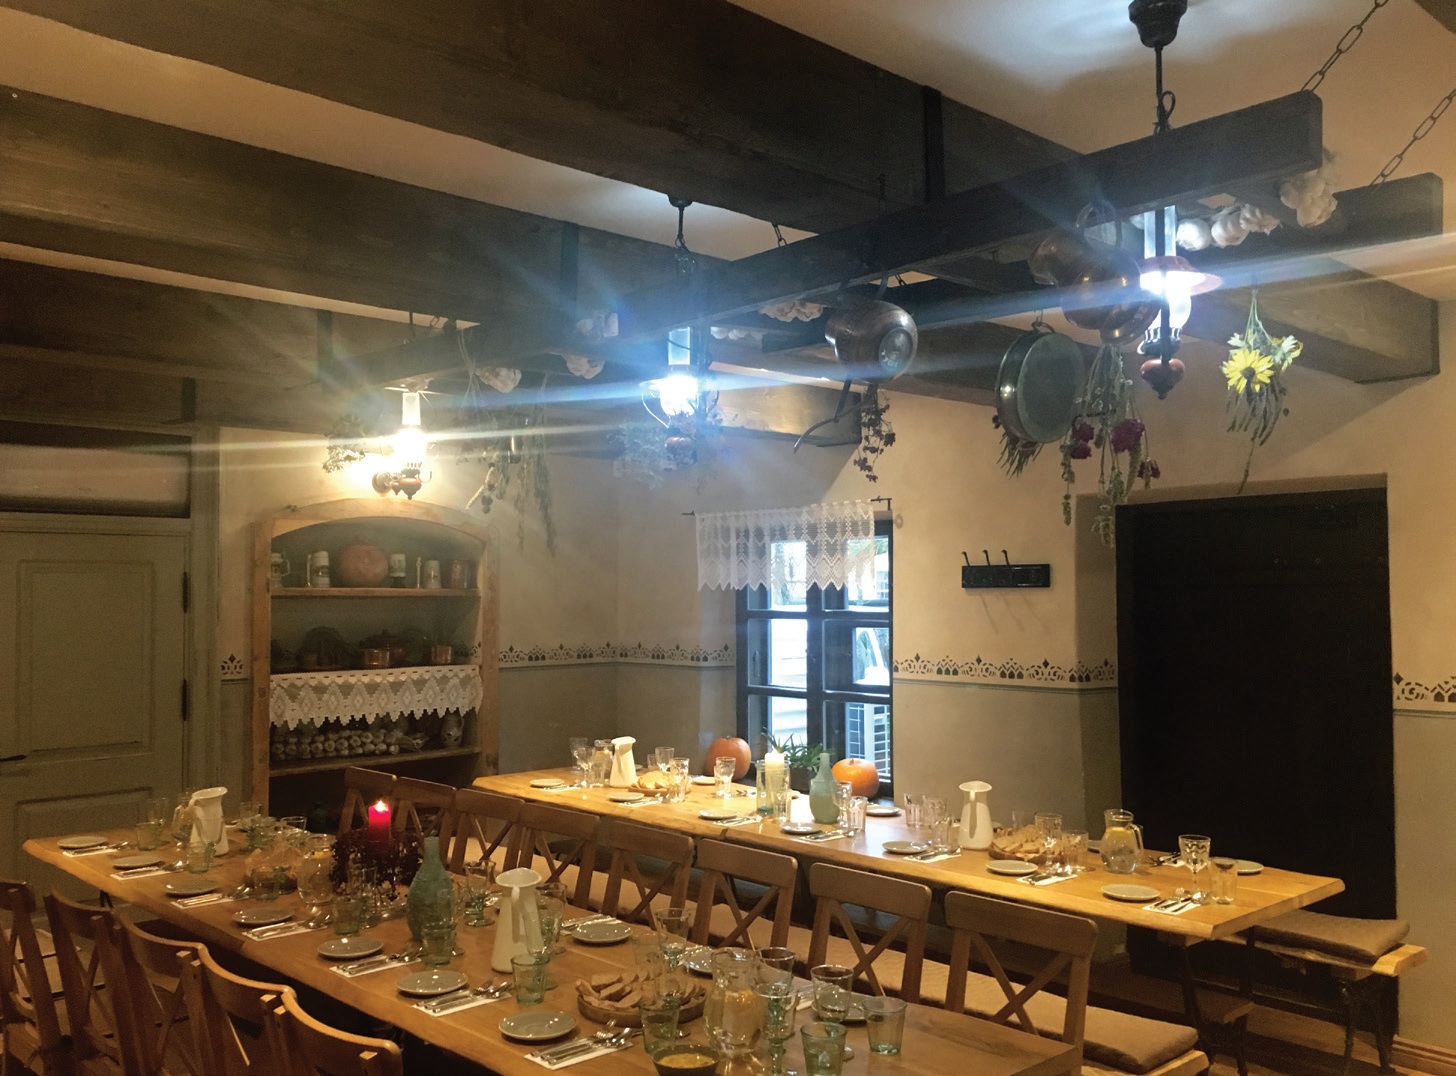 Zyplių dvaro restoranas „Kuchmistrai“ kviečia paskanauti vietinių ir istorinių bajoriškų patiekalų